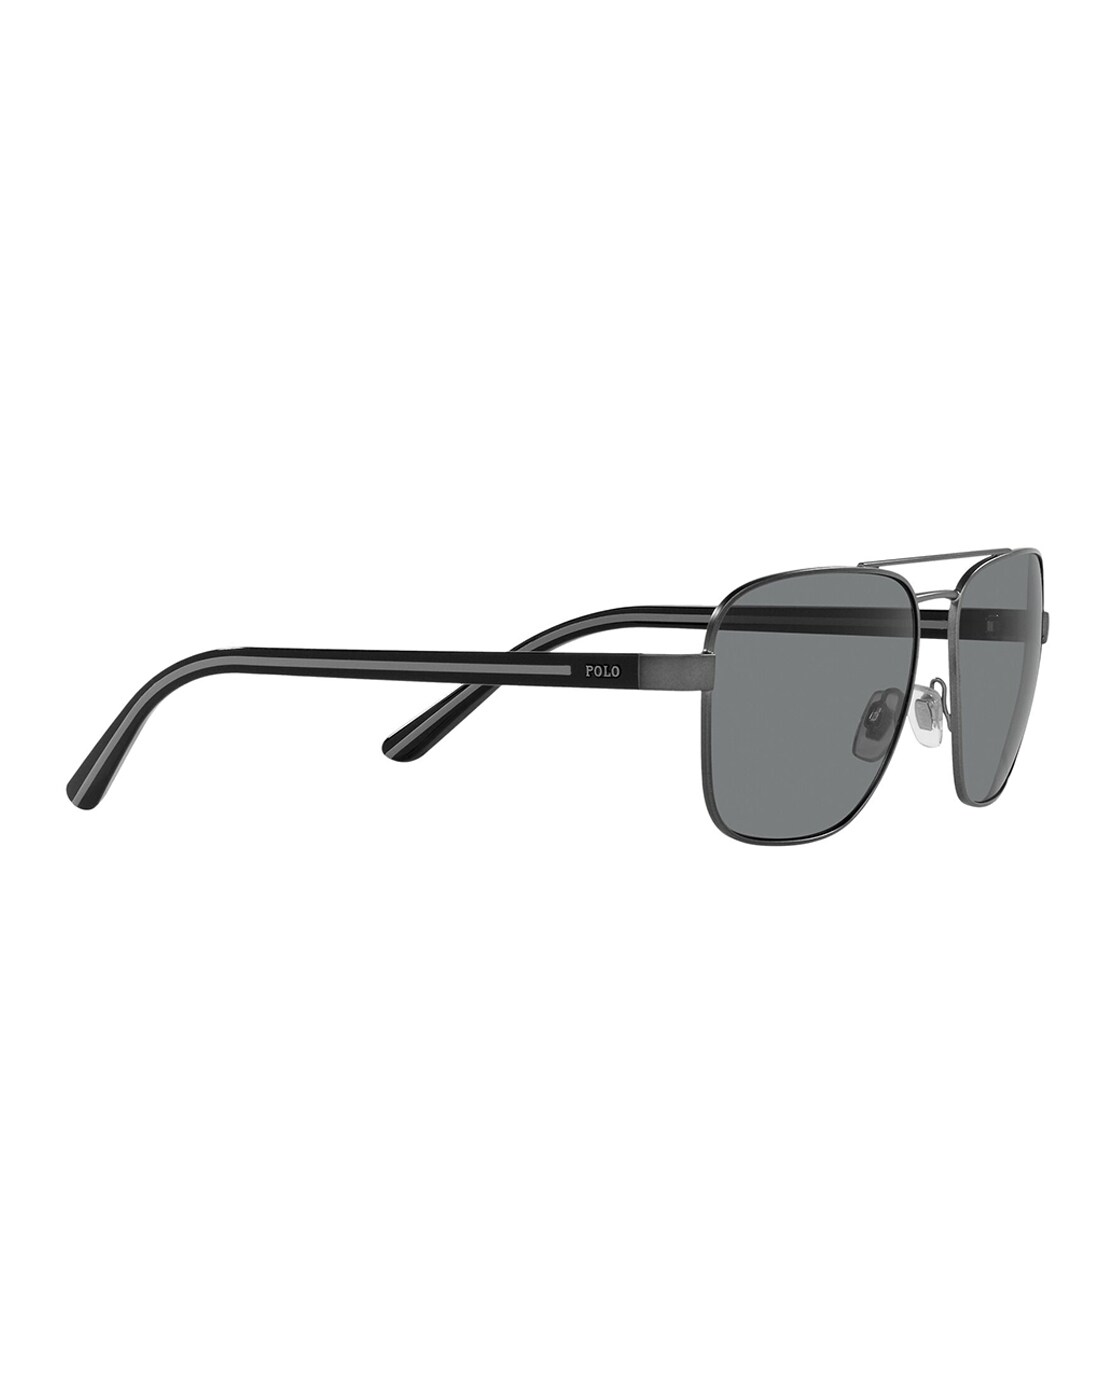 Randolph Aviator II Sunglasses: AT001, AT002, AT005, AT006, AT007, AT008,  AT009 - Flight Sunglasses